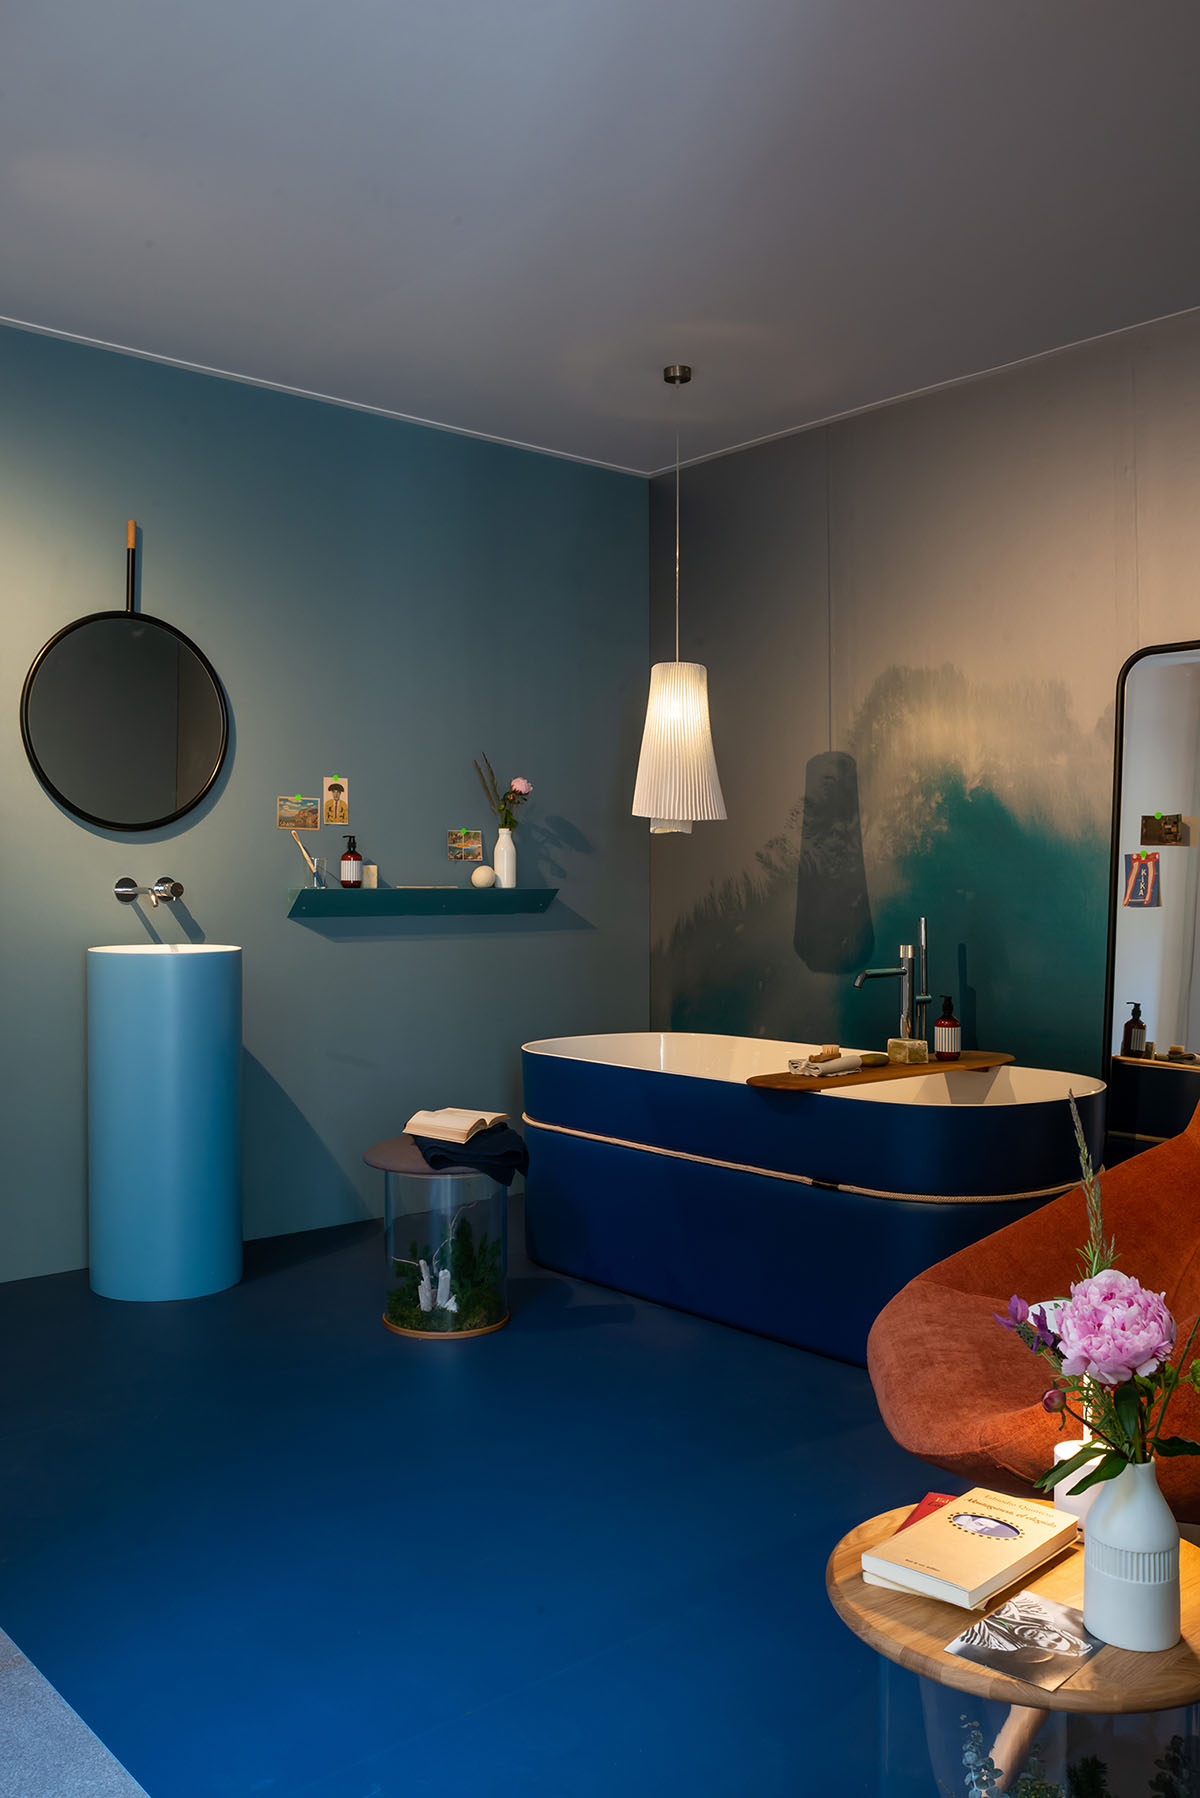 greenarea in appartamento spagnolo milan curated by elle decor and dwa studio